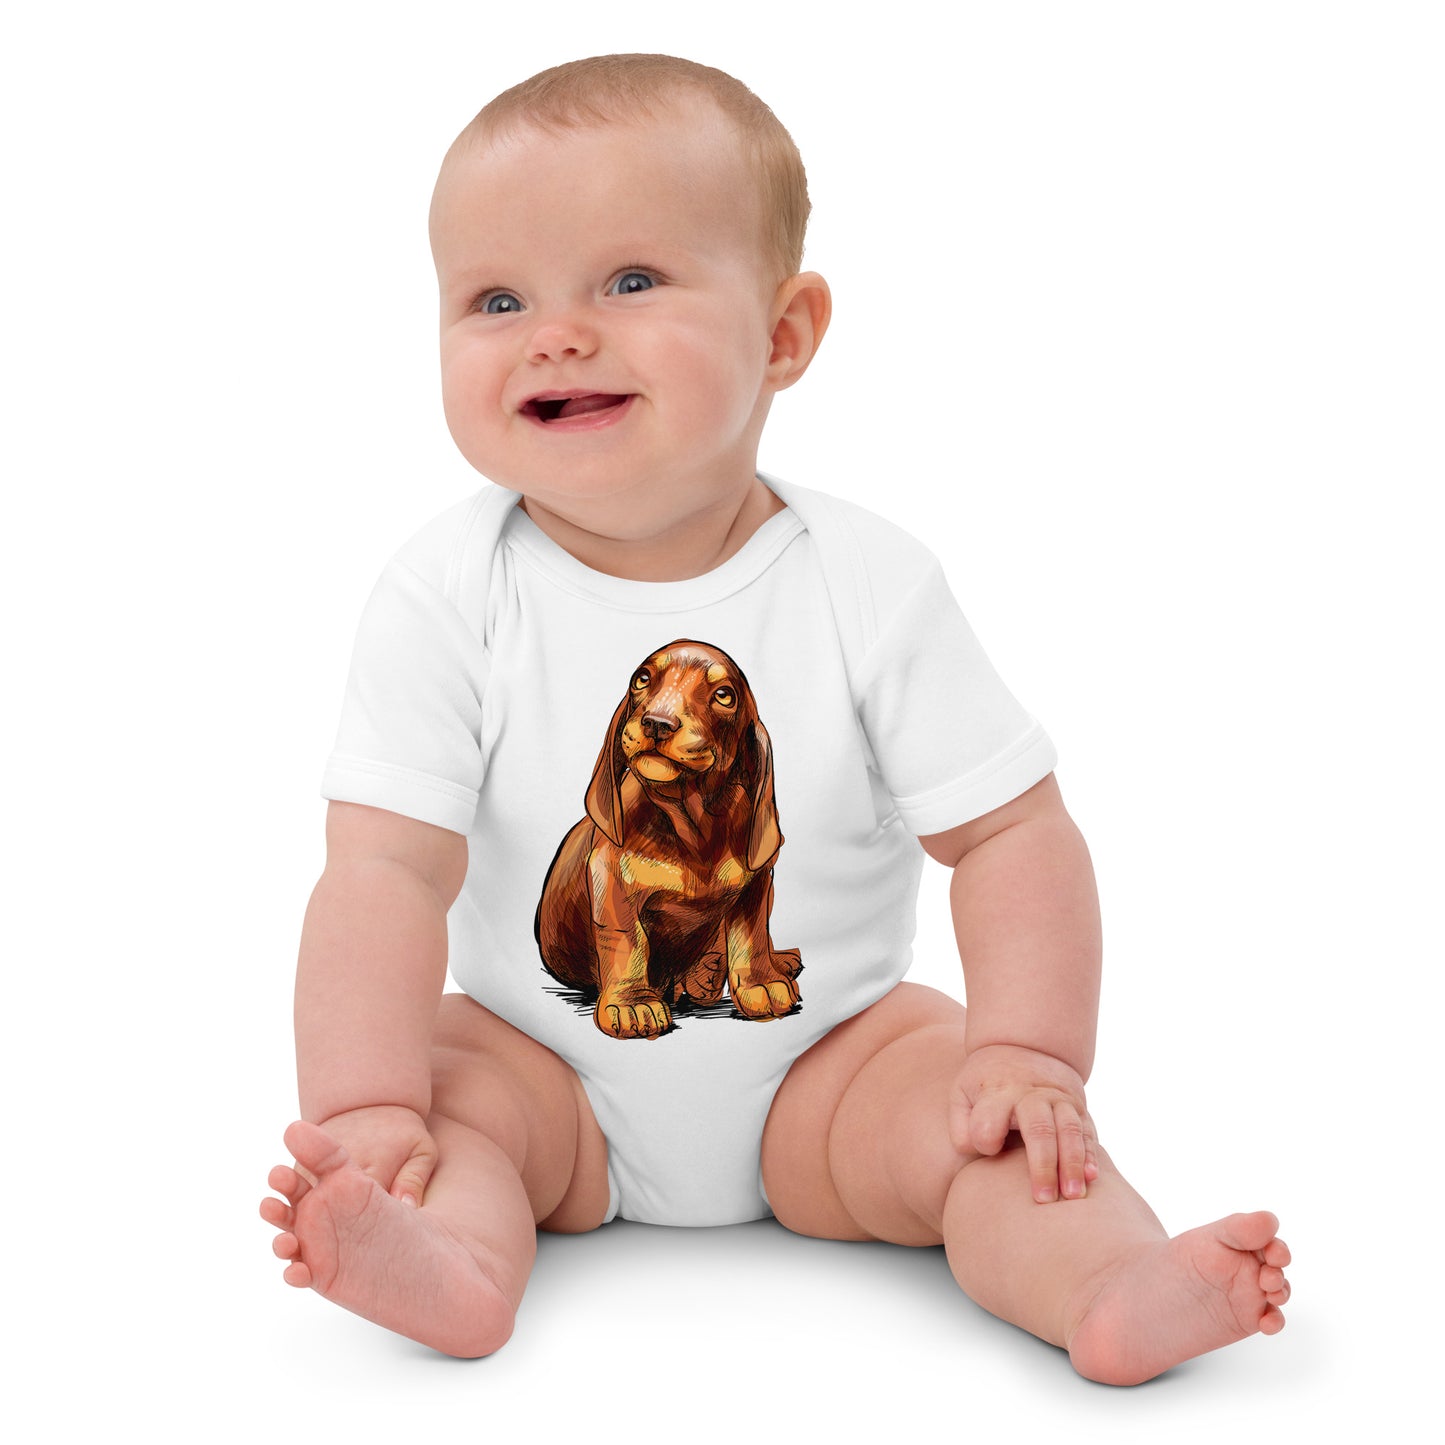 Cute Dachshund Puppy Dog Bodysuit, No. 0591